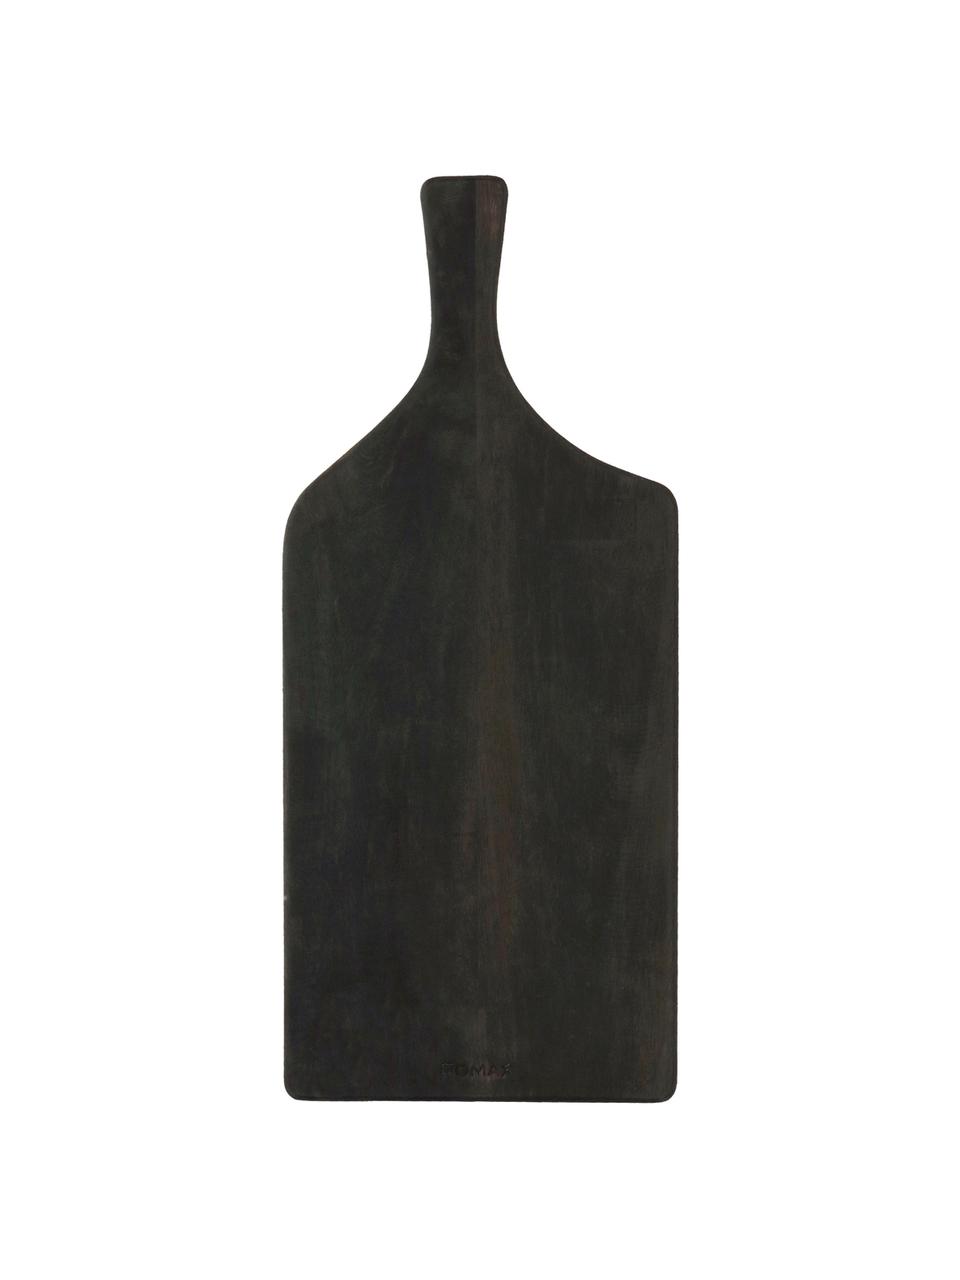 Deska do krojenia z drewna mangowego Limitless, Drewno mangowe, powlekane, Antracytowy, S 50 x D 22 cm